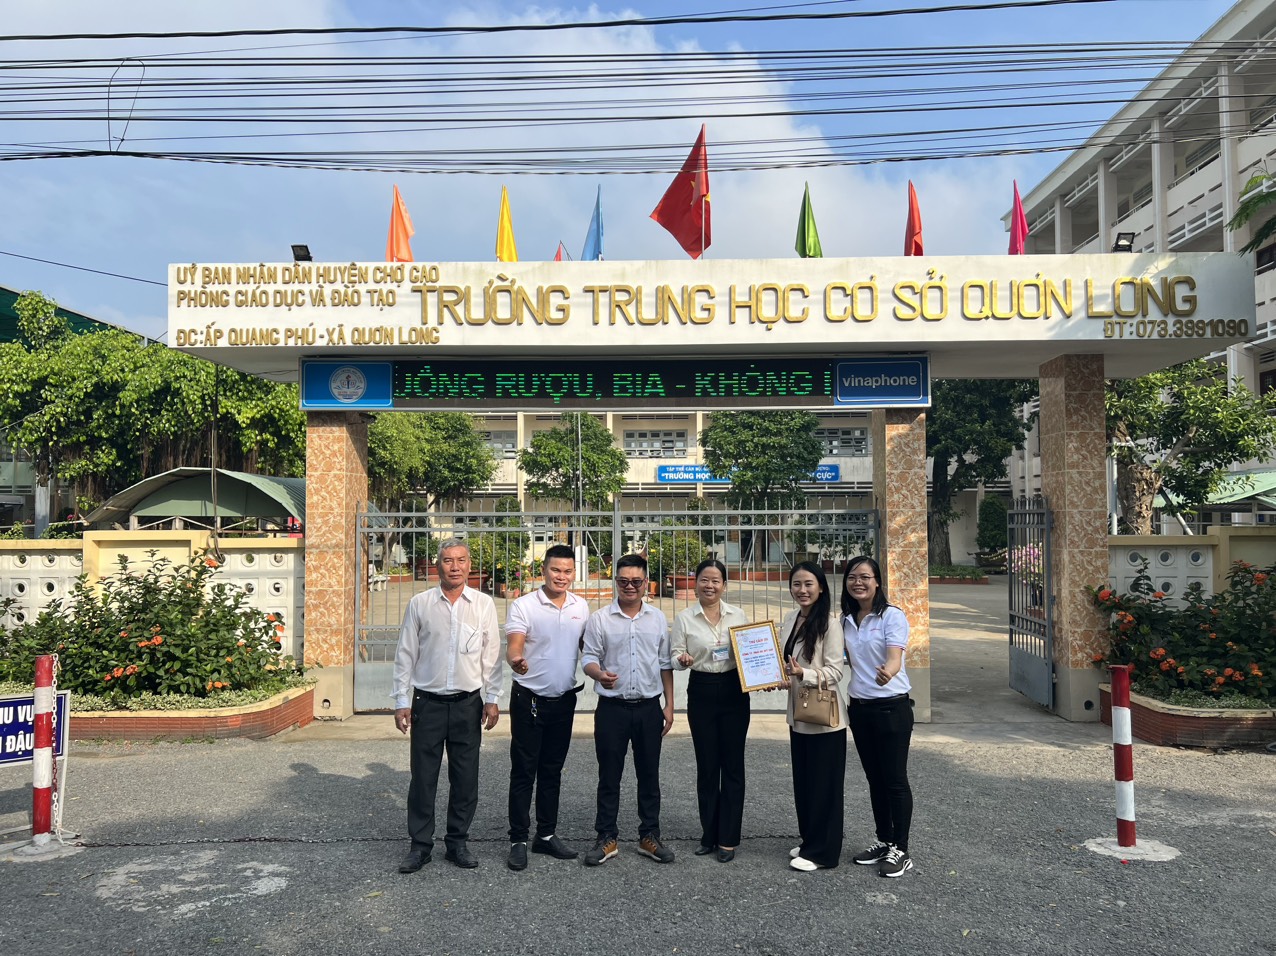 [Công tác xã hội] Nha khoa Mỹ Kim đồng hành cùng Trường THCS Quơn Long - Tỉnh Tiền Giang